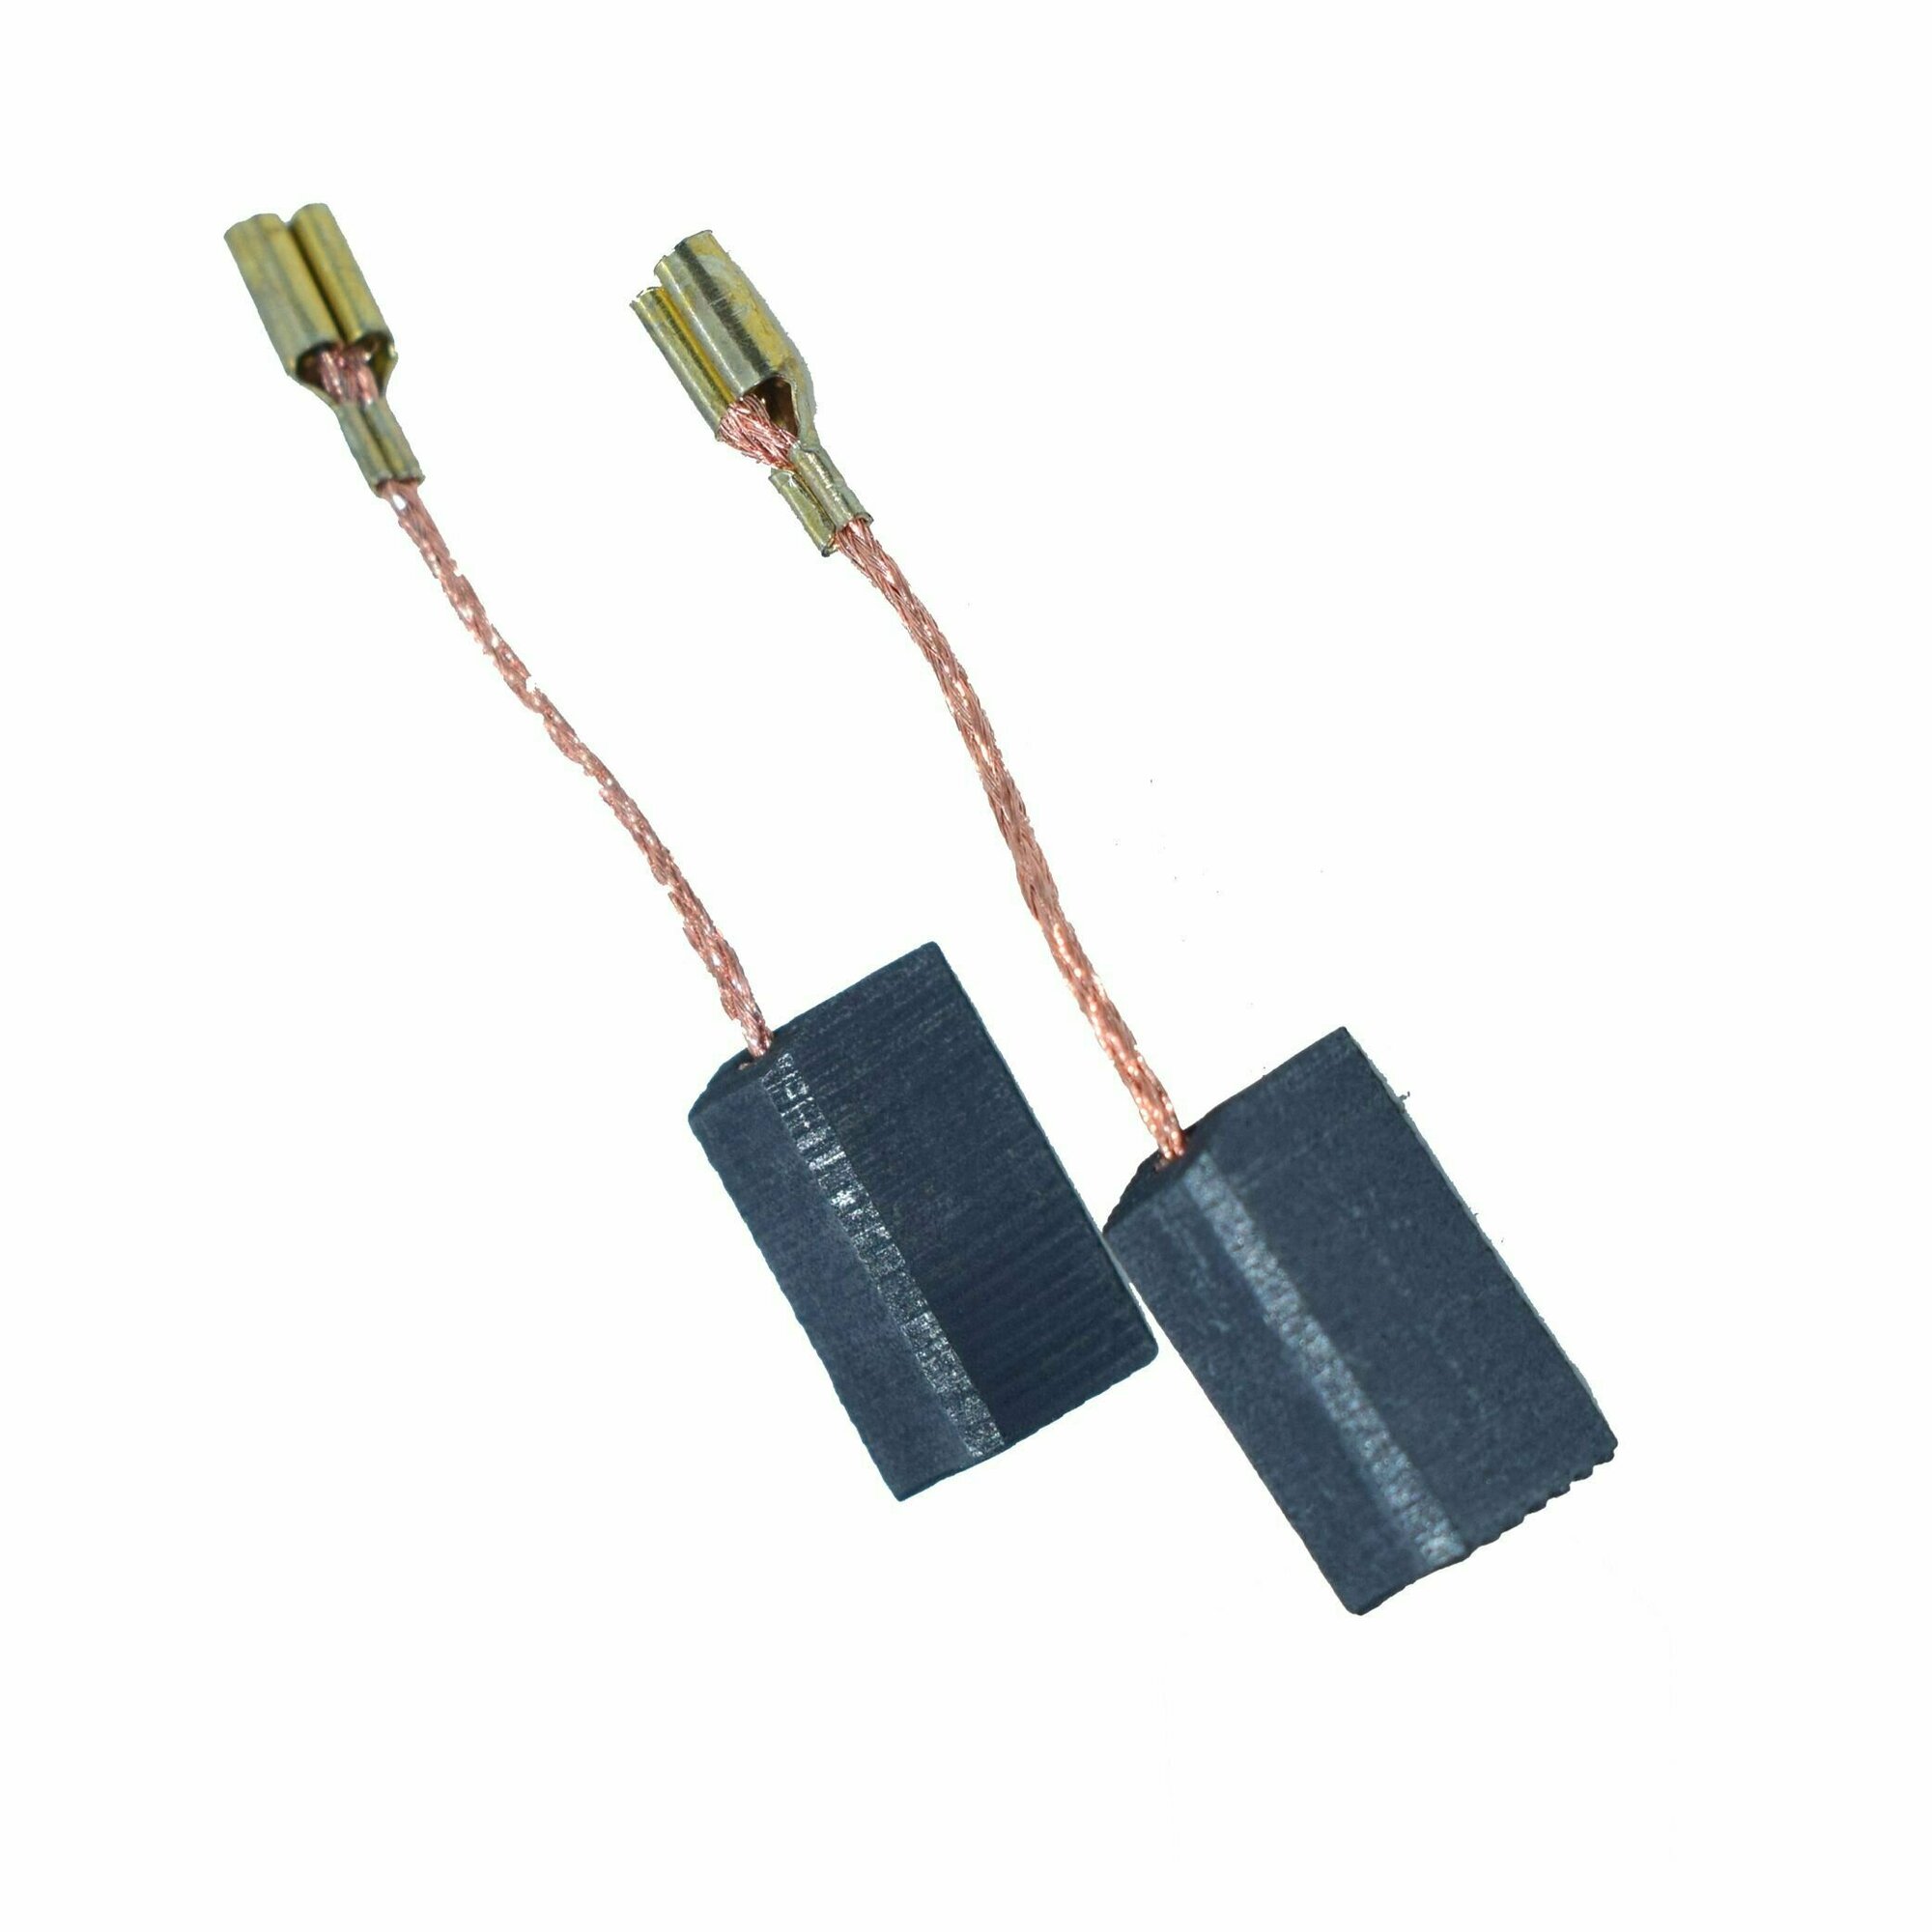 Щетки графитовые универсальные 6х8х14 для электроинструмента (AEZ)